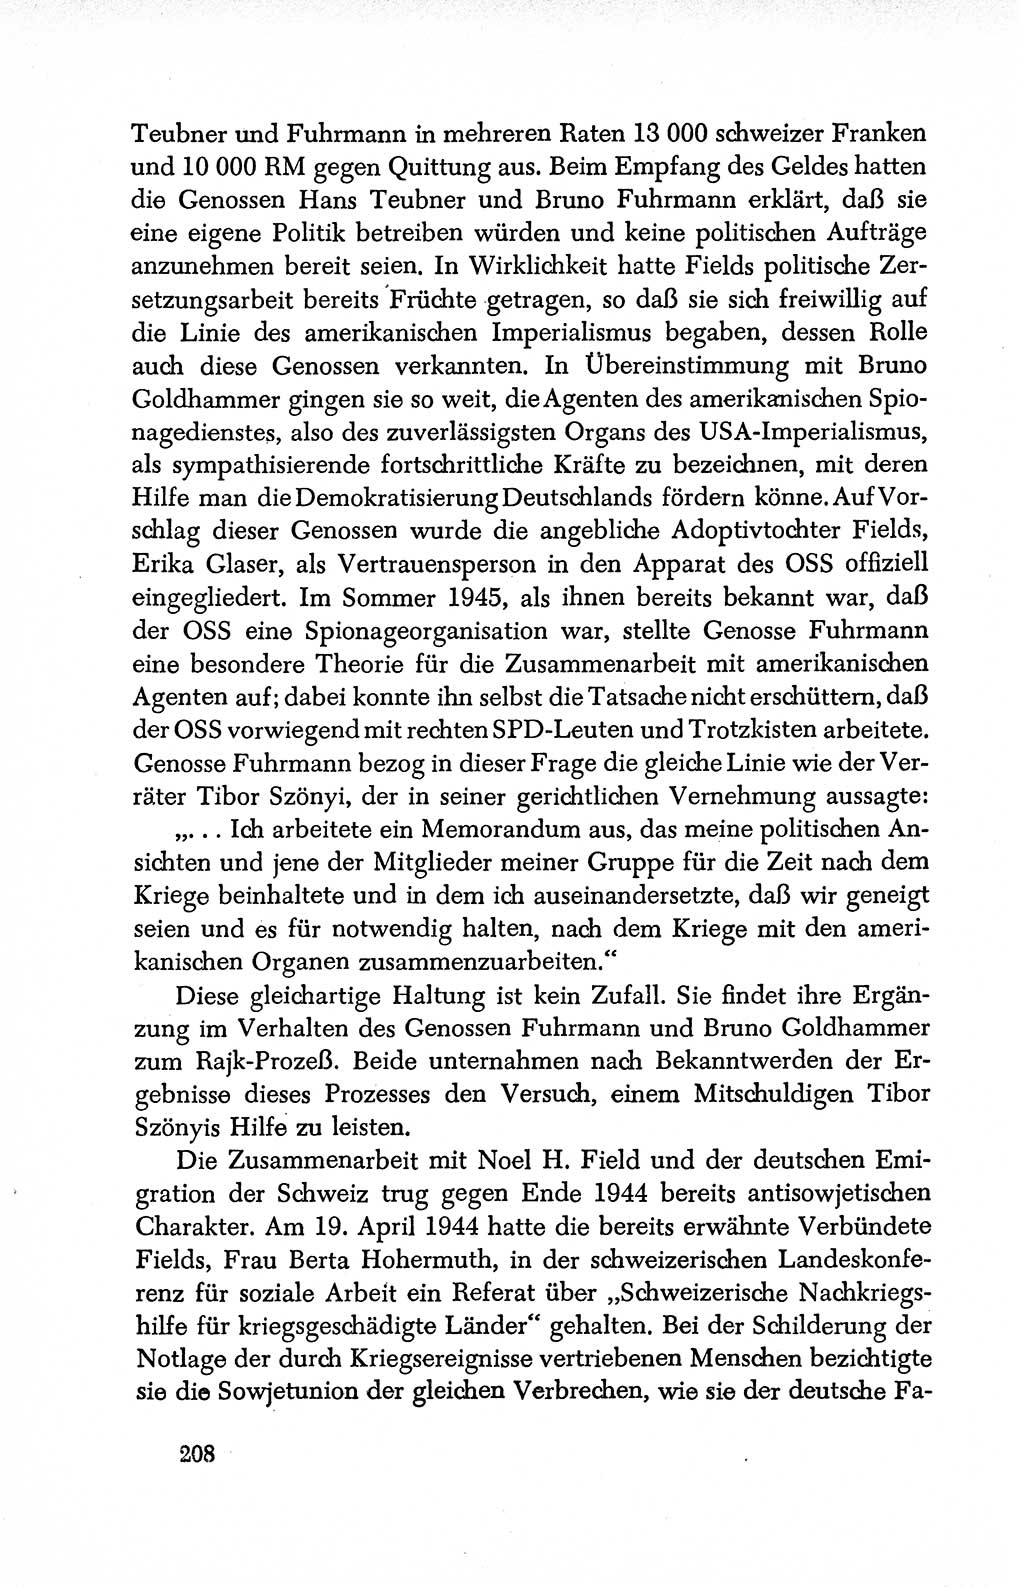 Dokumente der Sozialistischen Einheitspartei Deutschlands (SED) [Deutsche Demokratische Republik (DDR)] 1950-1952, Seite 208 (Dok. SED DDR 1950-1952, S. 208)